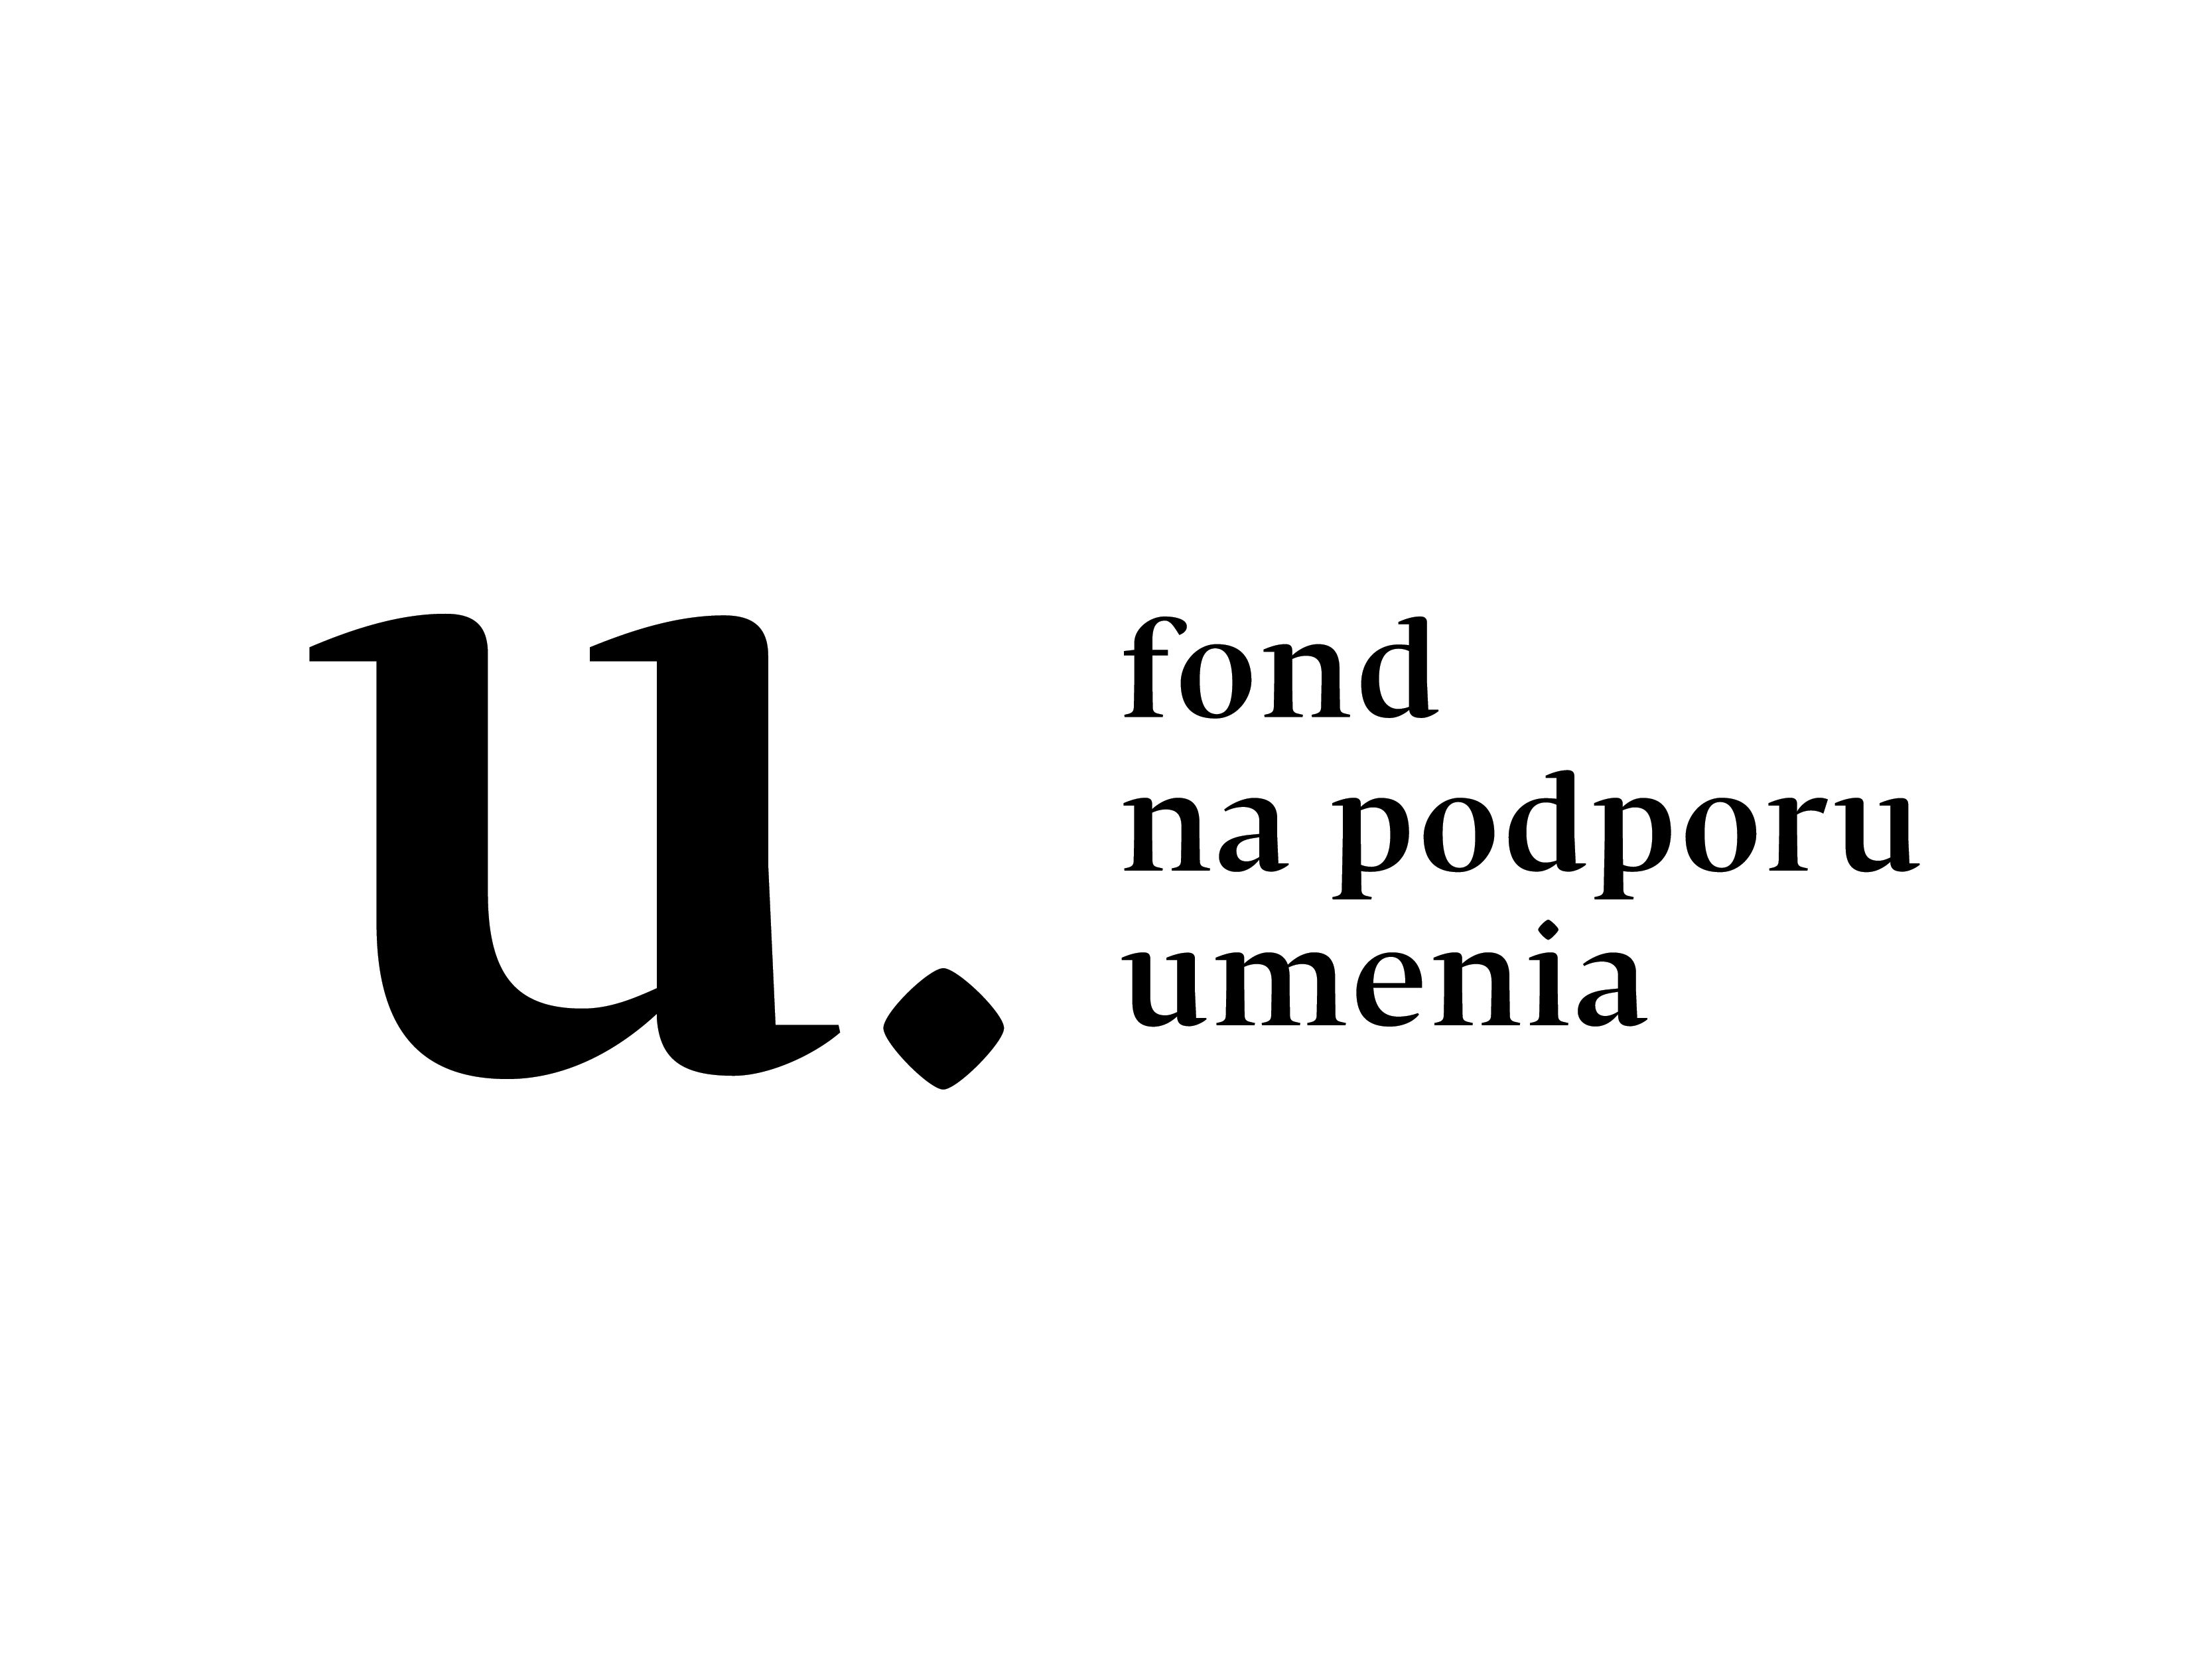 FPU logo2 cierne